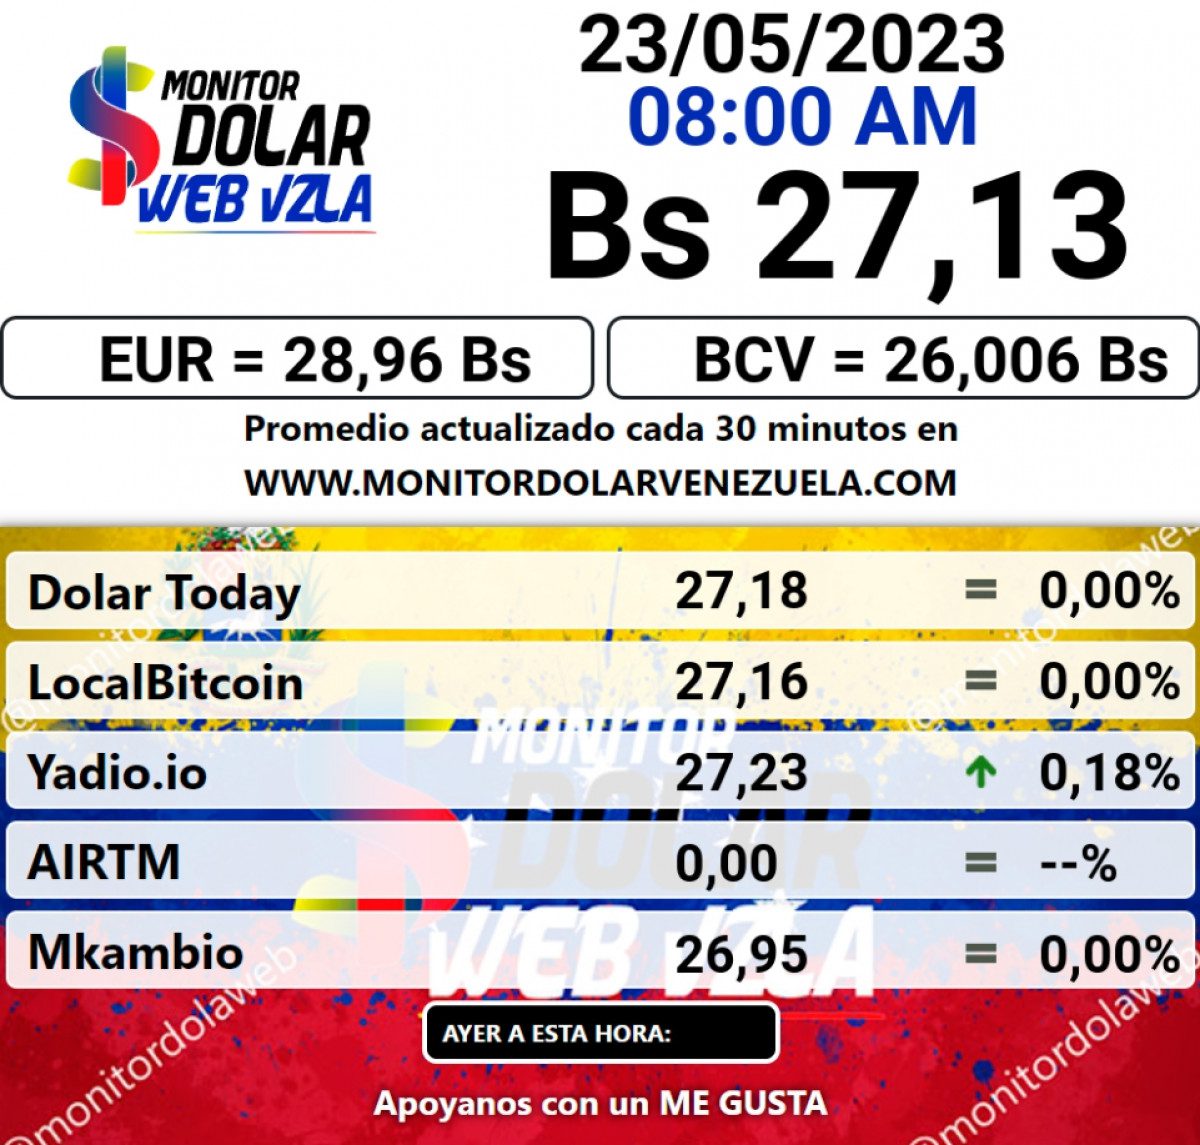 dolartoday en venezuela precio del dolar este martes 23 de mayo de 2023 laverdaddemonagas.com monitor12